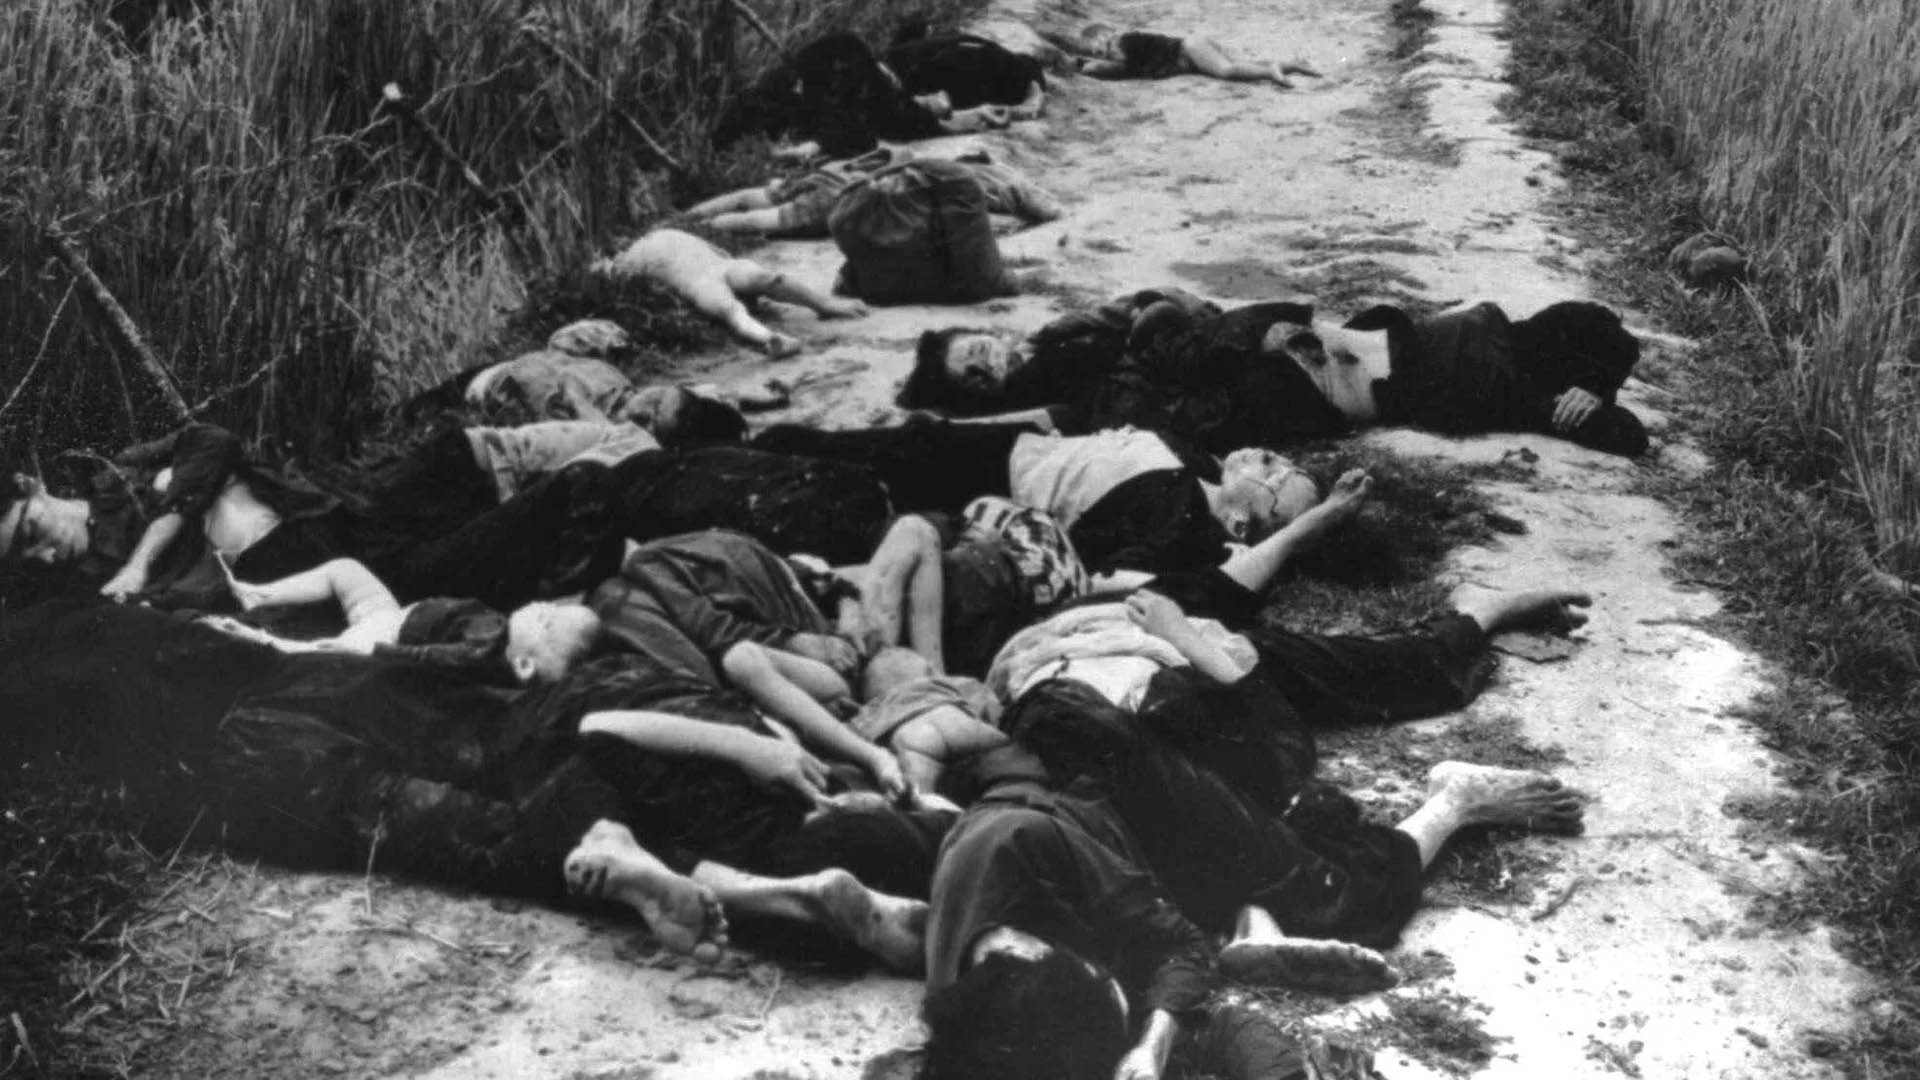 La matanza de la aldea My Lai se concertó el 16 de marzo de 1968. Las tropas estadounidenses arrasaron con civiles desarmados e infraestructura: se estima que murieron asesinadas más de 500 personas